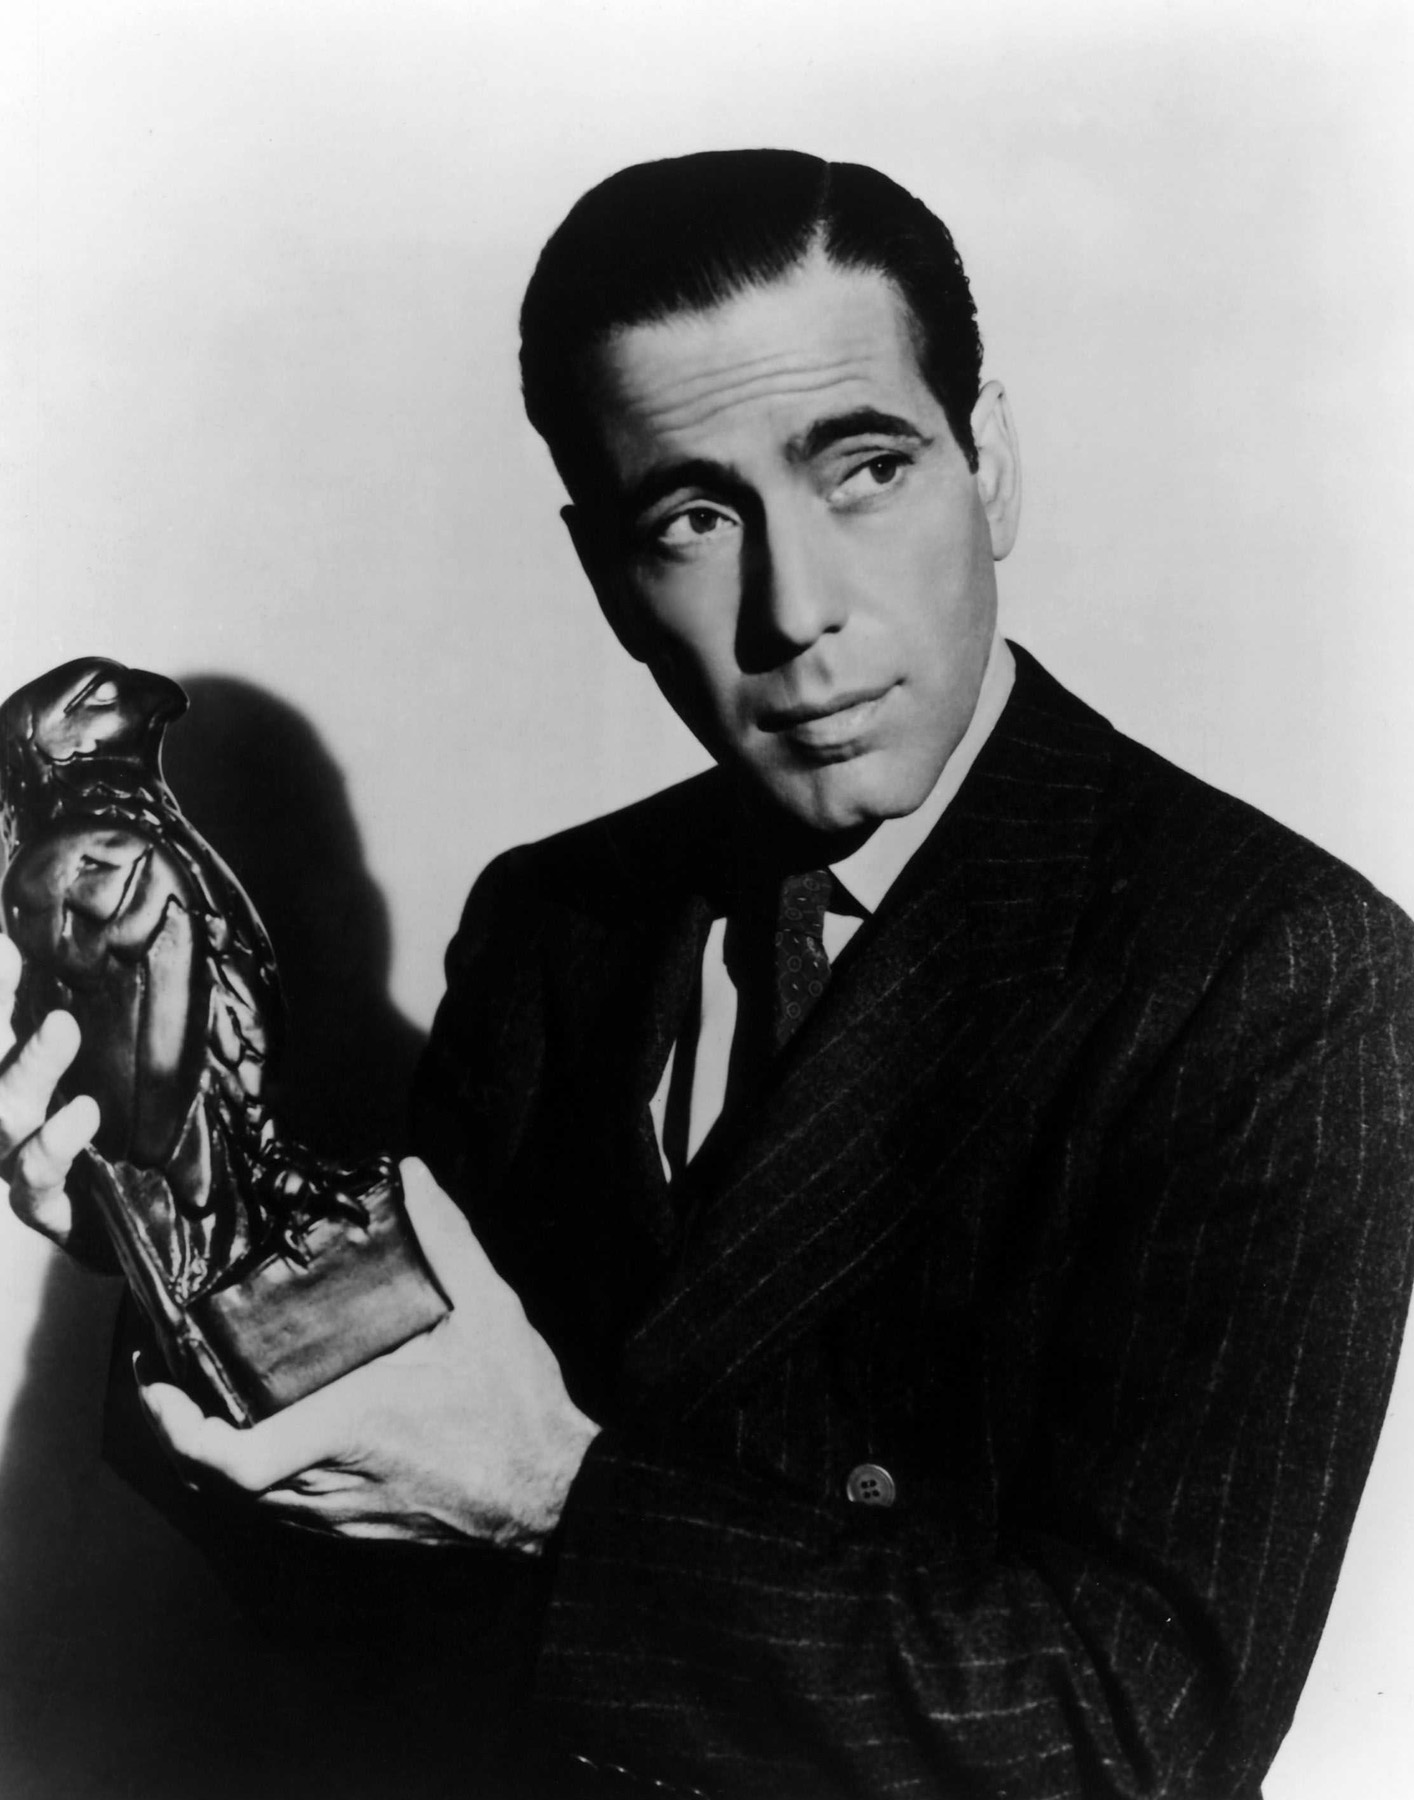 Humphrey Bogart as Sam Spade in The Maltese Falcon